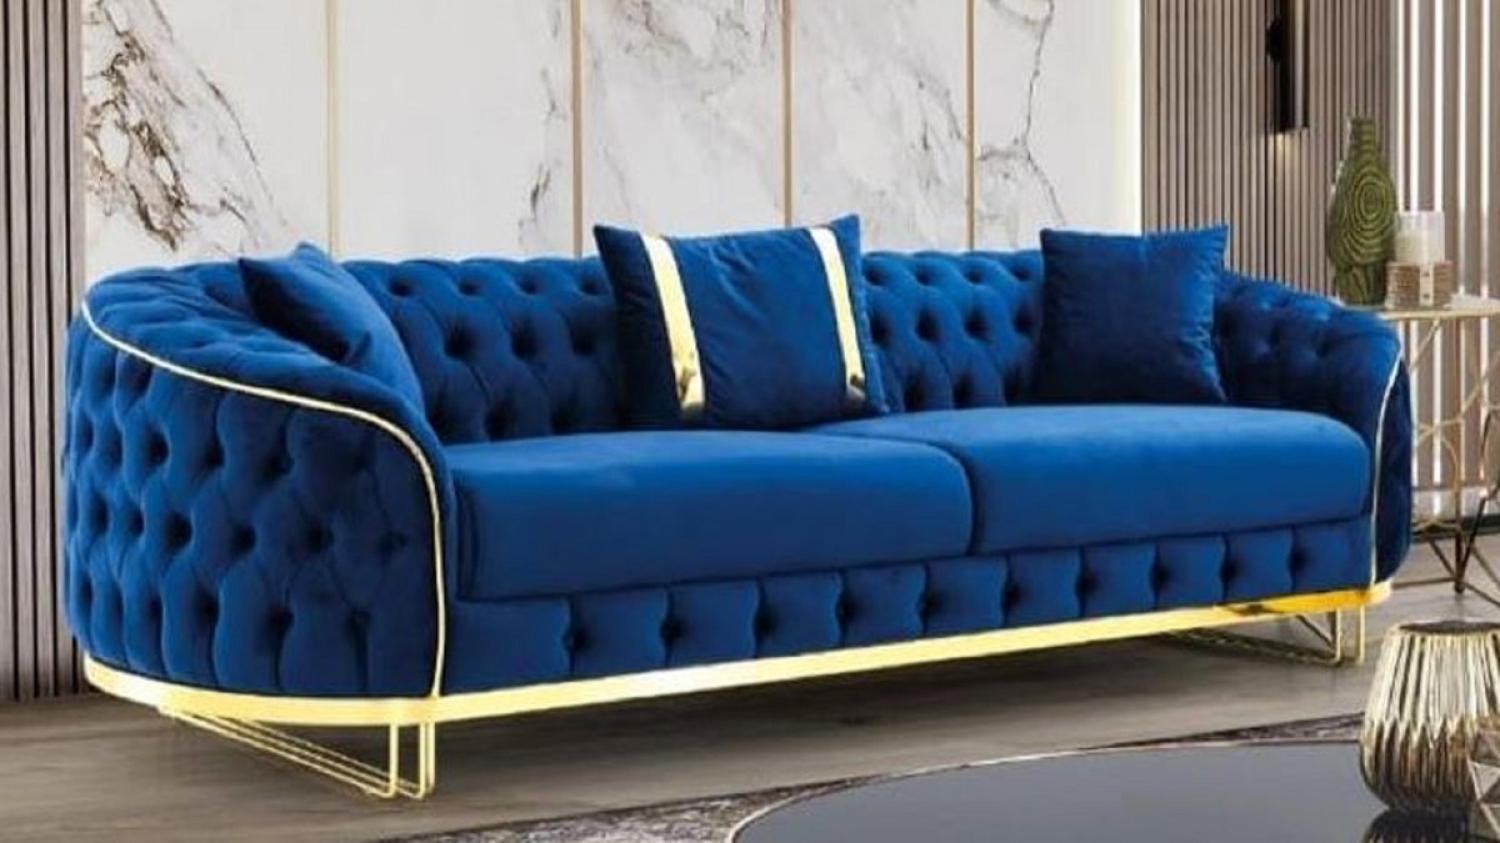 Casa Padrino Luxus Chesterfield Sofa Blau / Gold 240 x 95 x H. 72 cm - Modernes Wohnzimmer Sofa - Chesterfield Wohnzimmer Möbel Bild 1